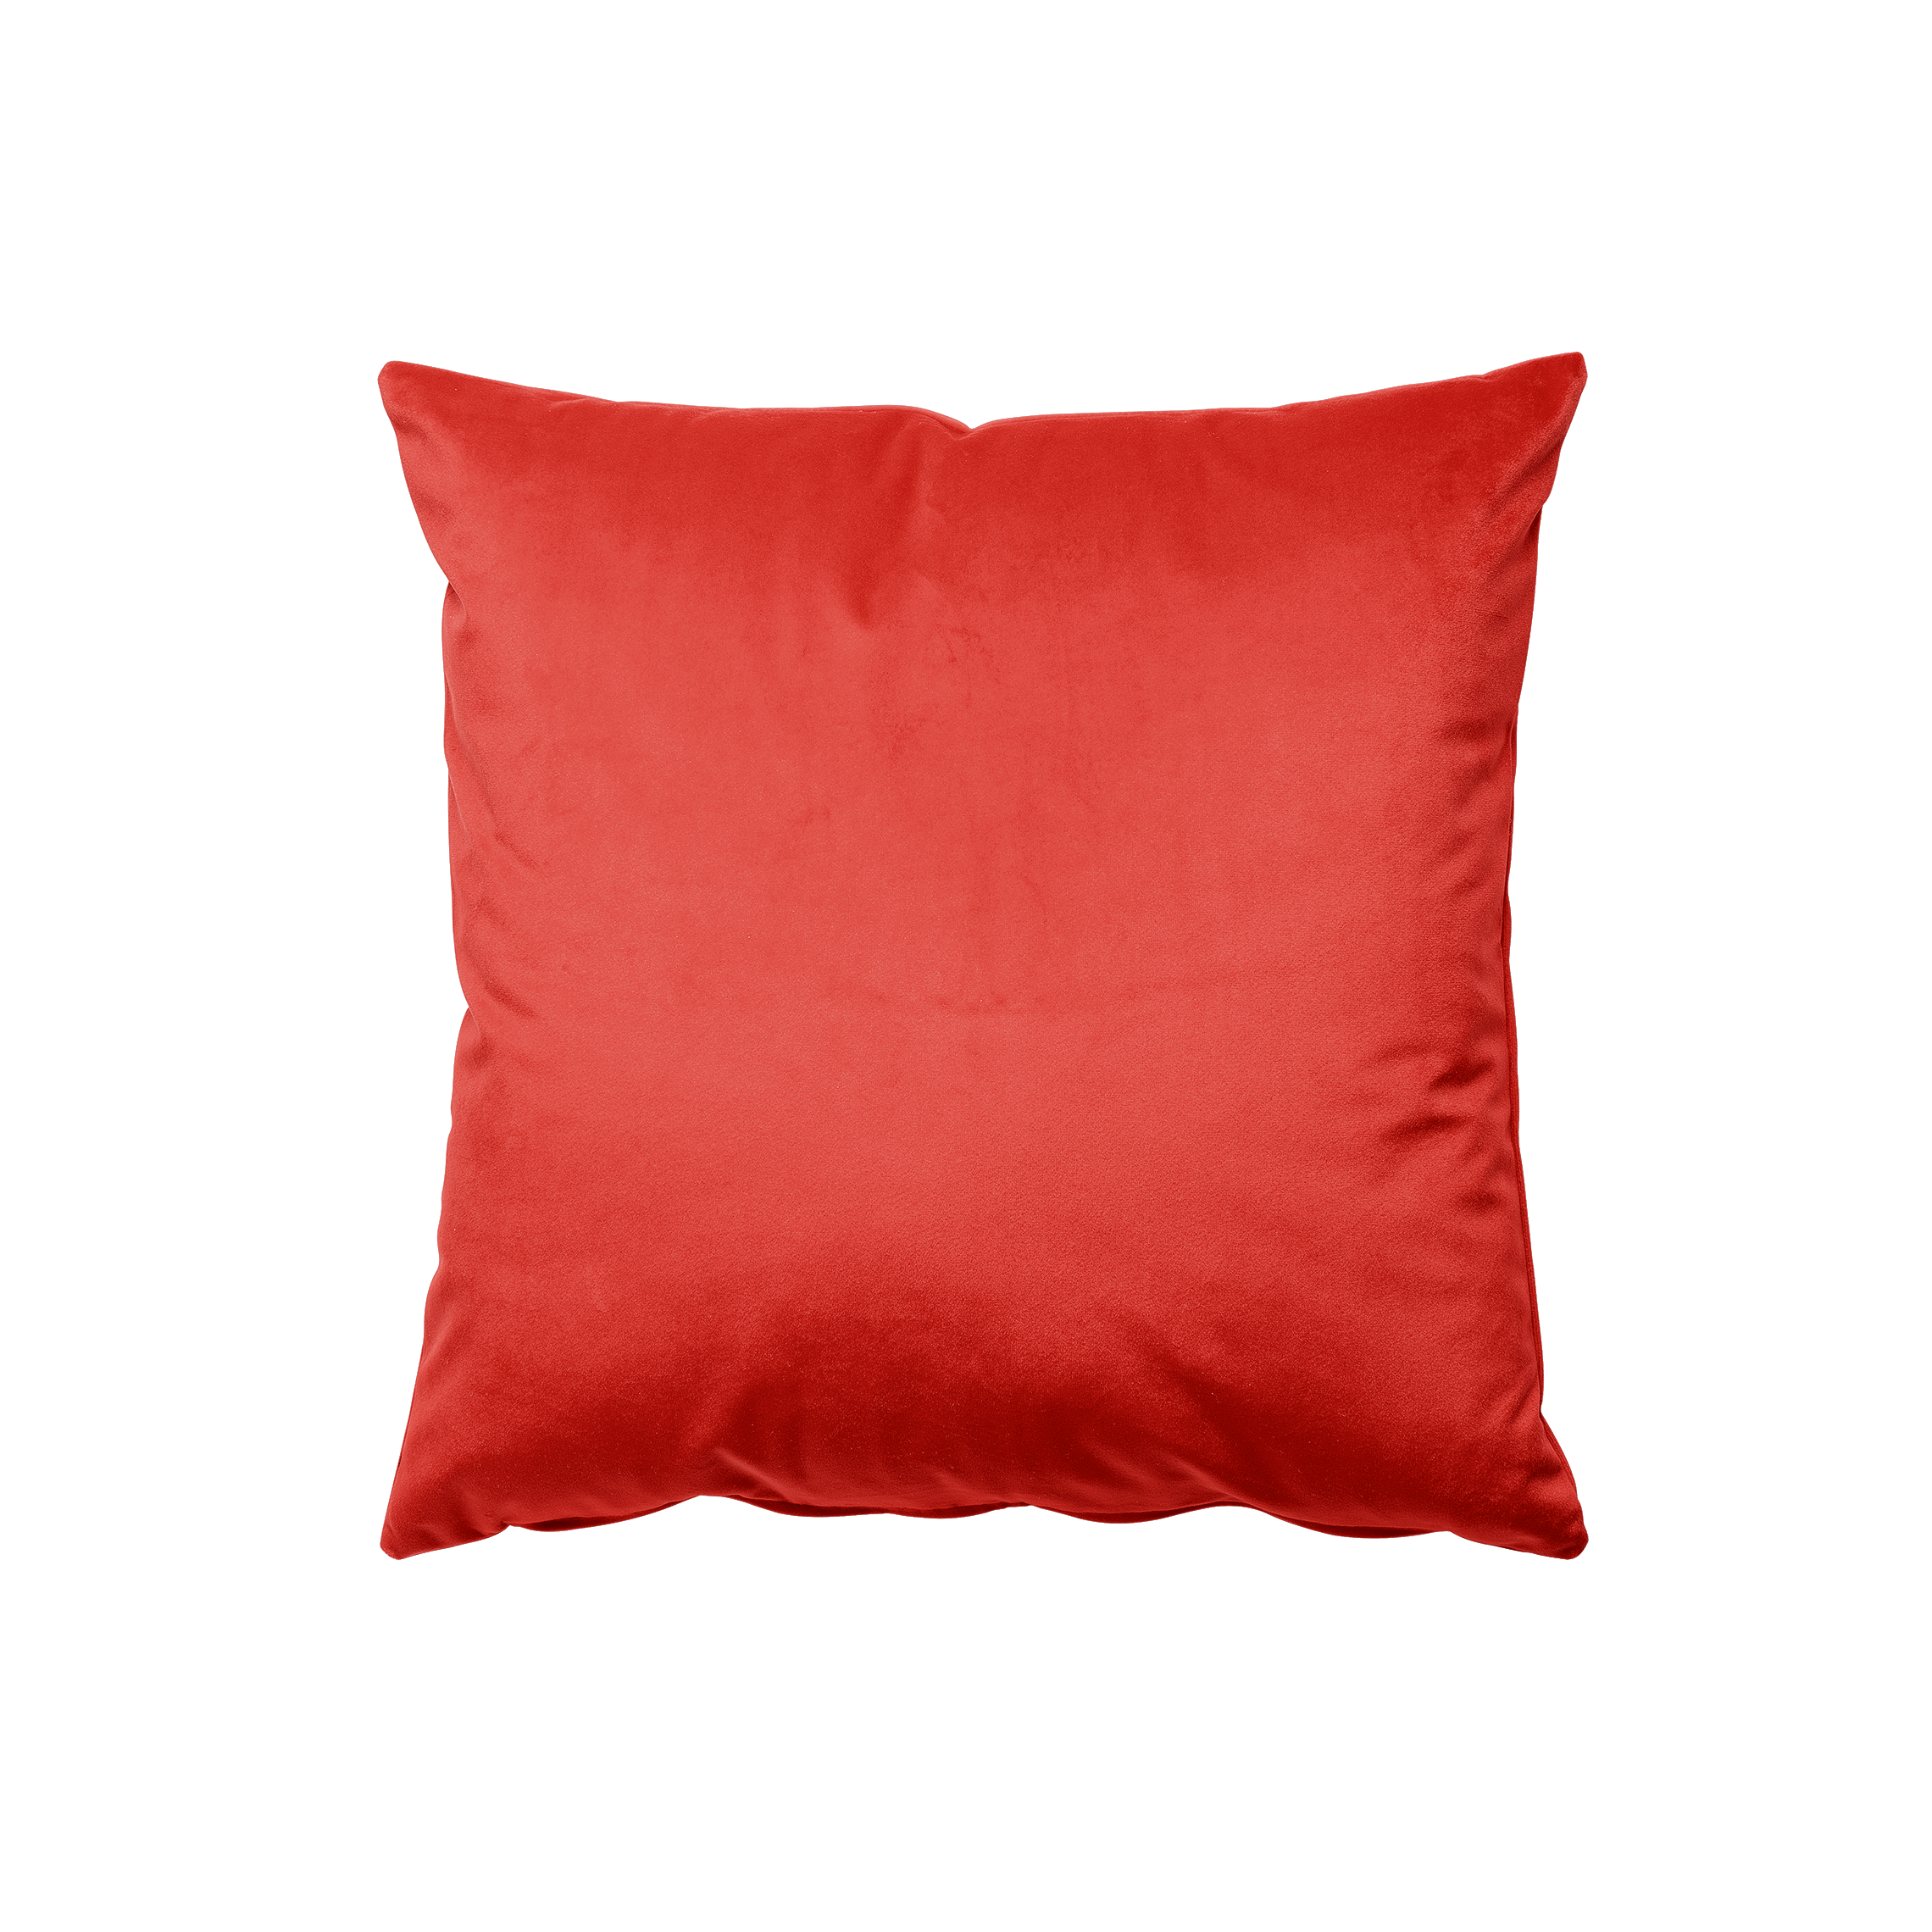 Persimmon Velvet Pillow